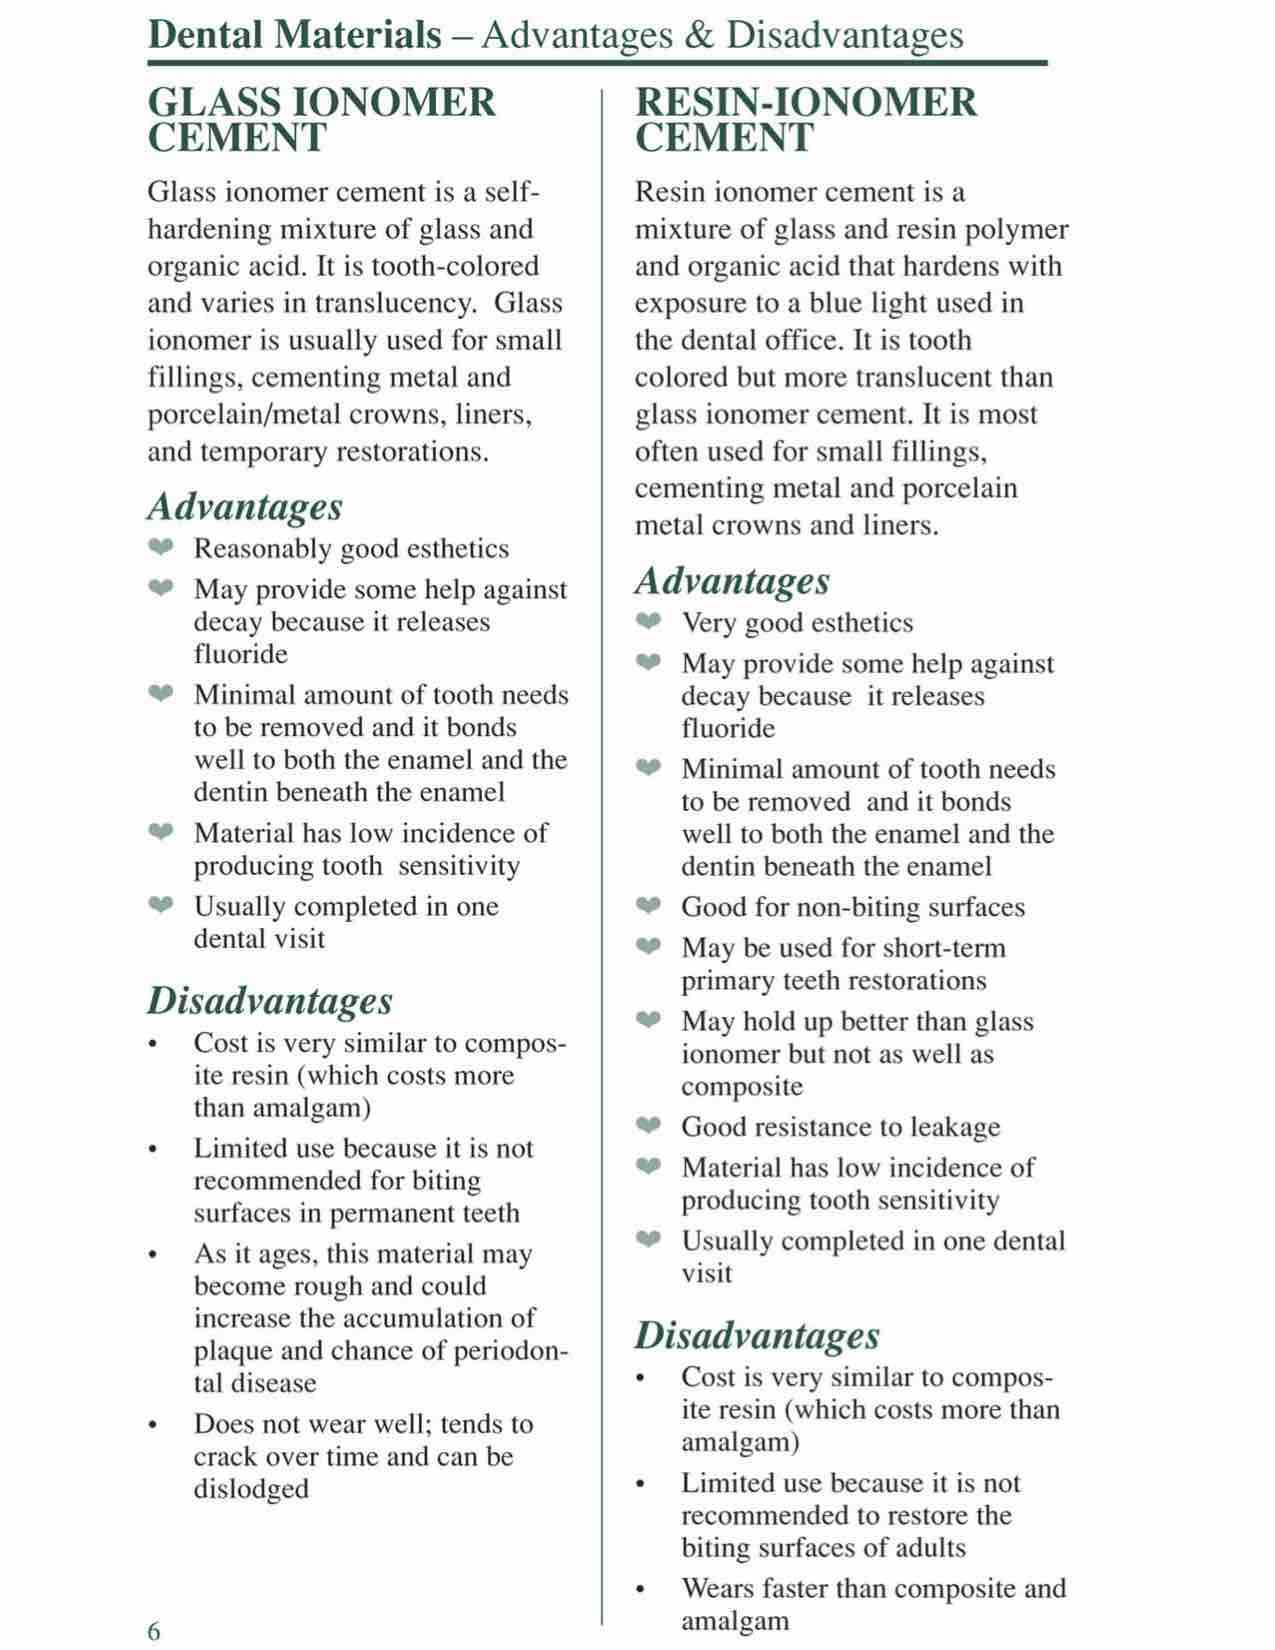 Dental Materials Fact Sheet-6.jpg